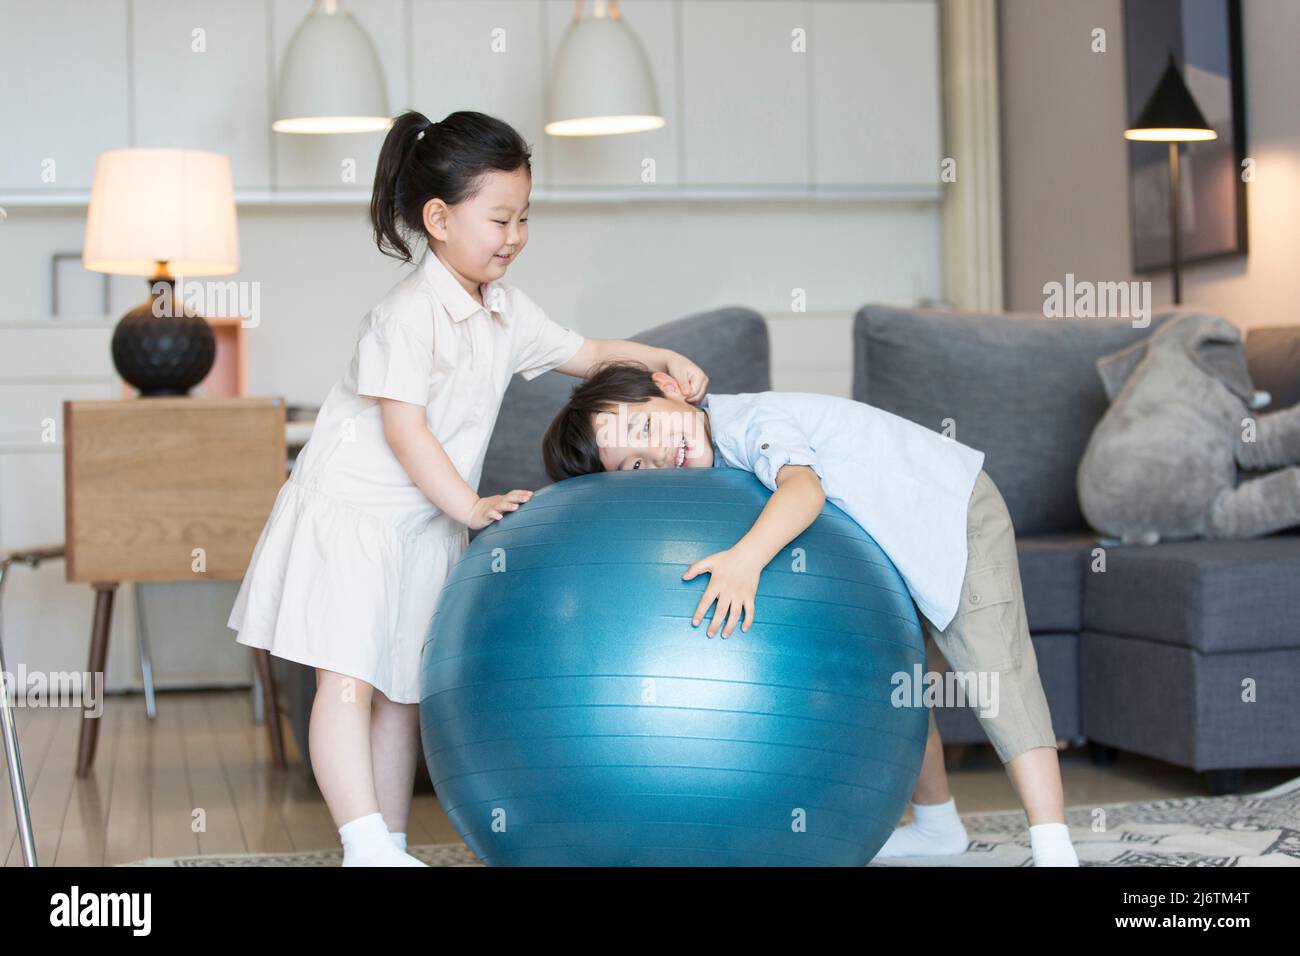 Une petite fille et un petit garçon jouant intimement sur la balle d'exercice dans le salon - photo de stock Banque D'Images